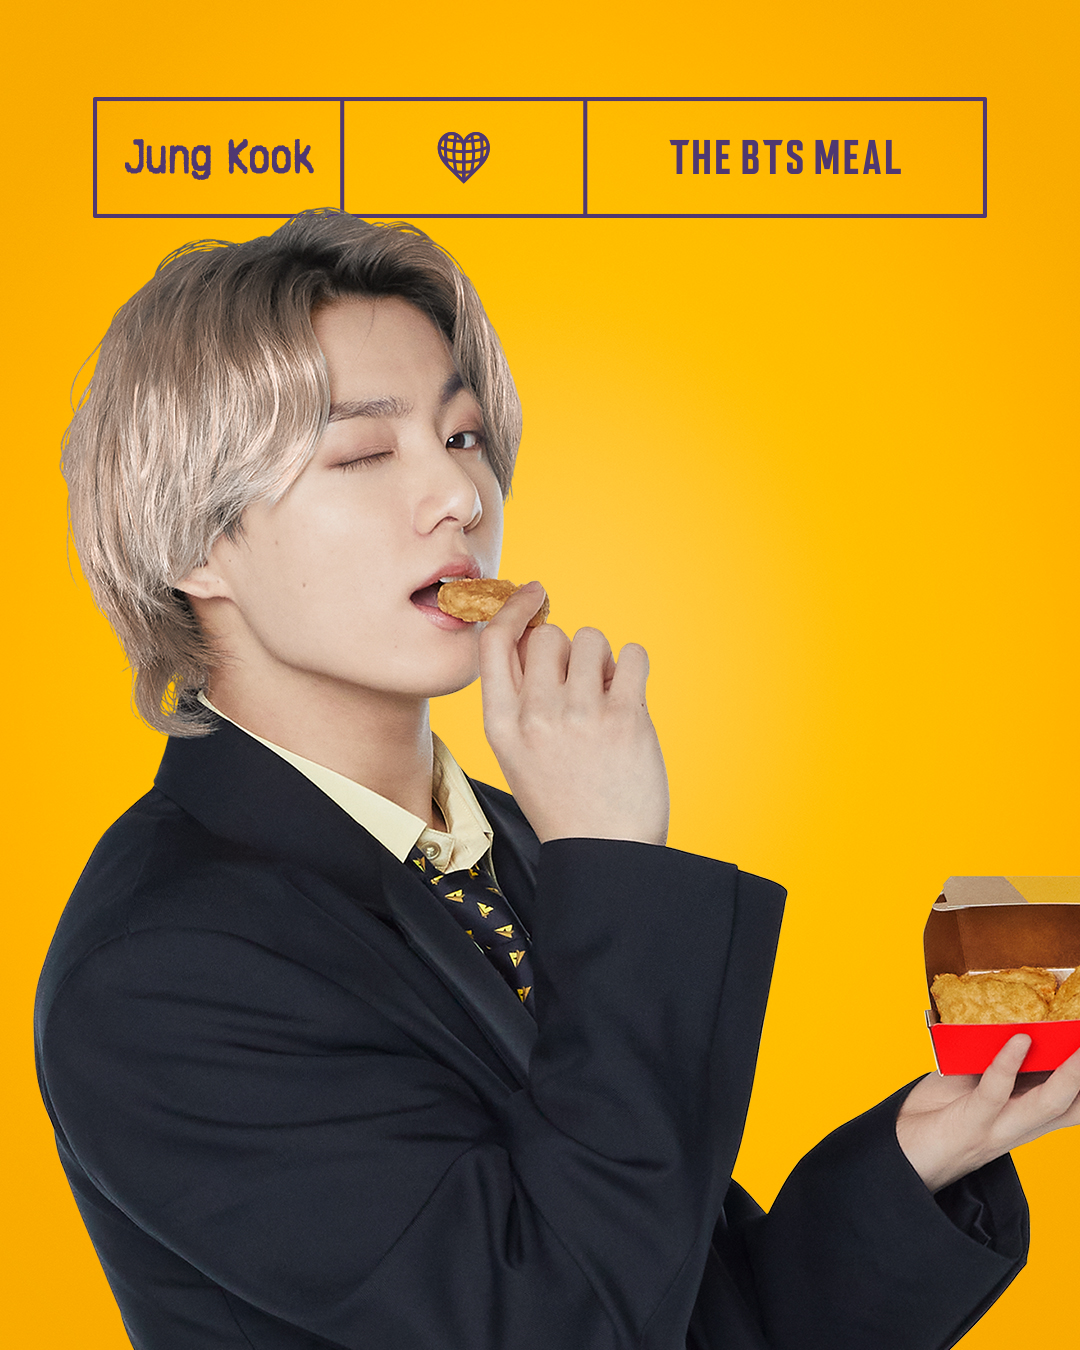 McDonald's x McD: Jung Kook the Golden Maknae meets the Golden Arches